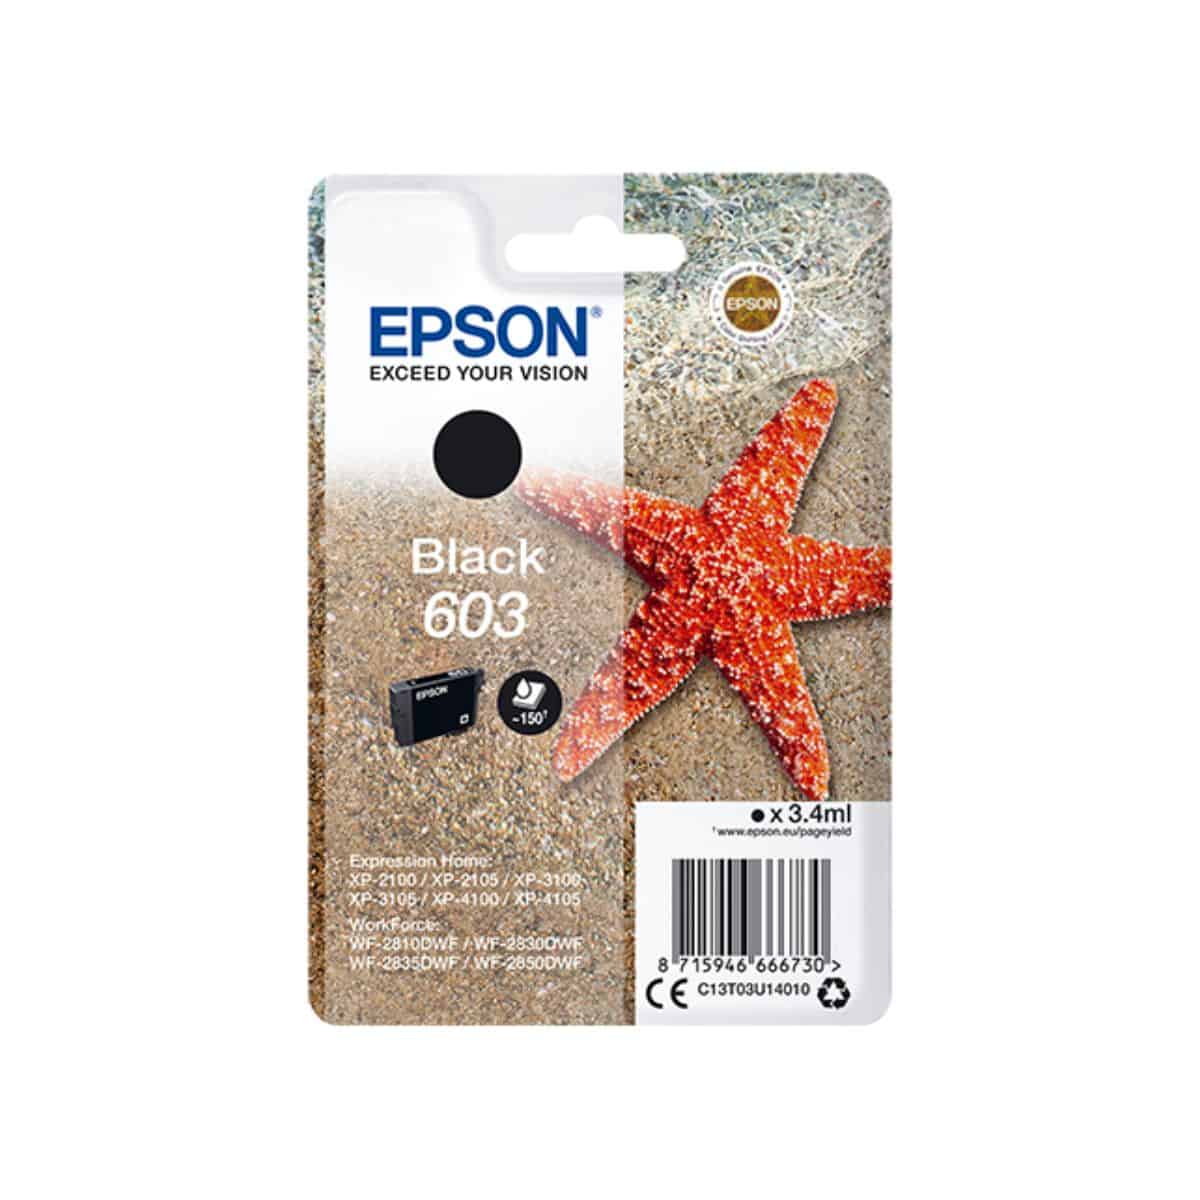 603 BK Cartouche Epson - Noir - Etoile de mer